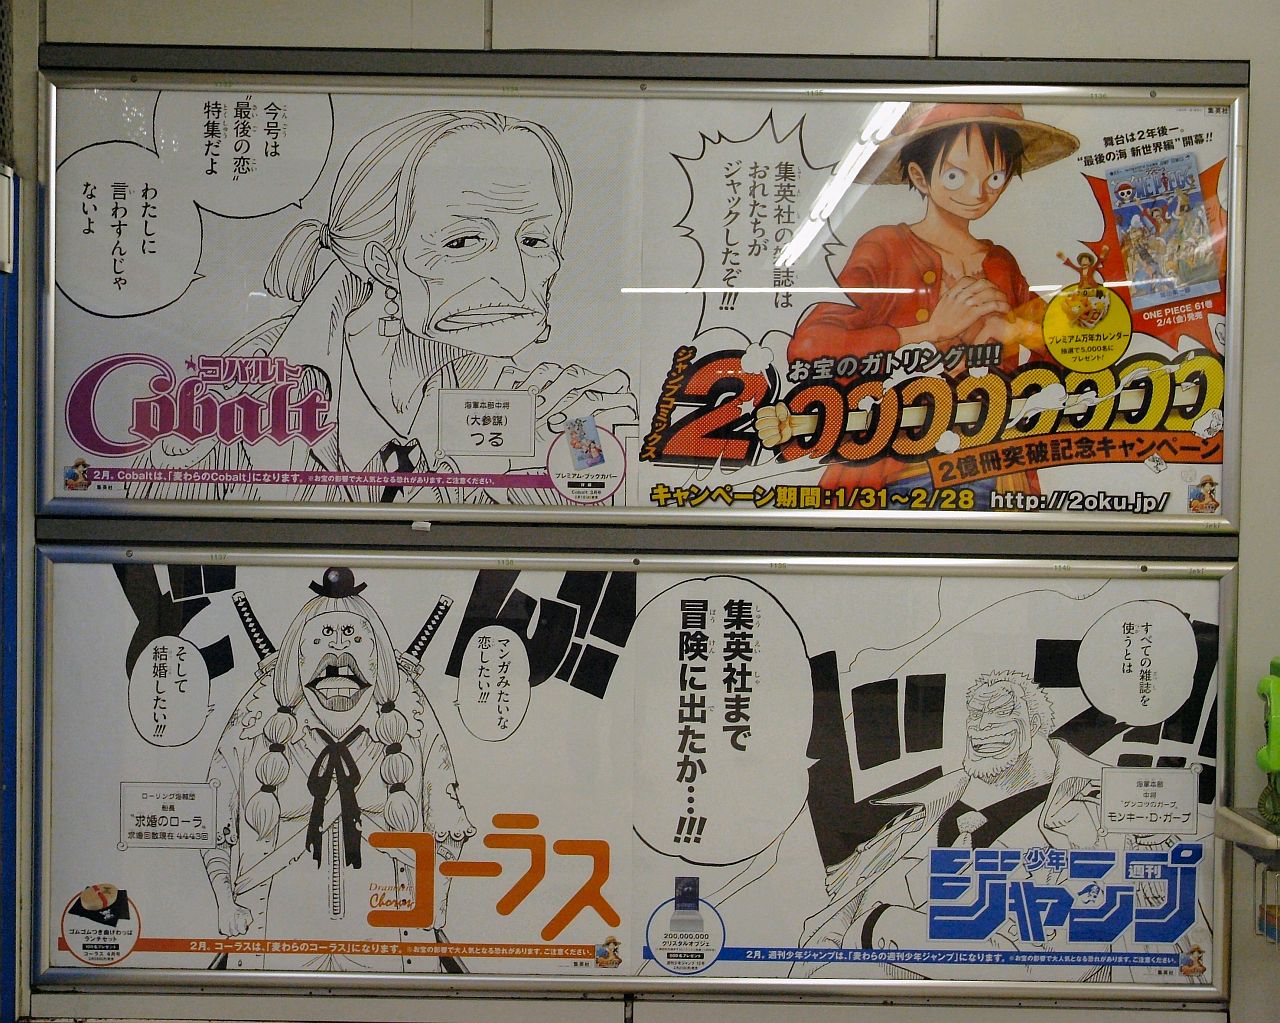 渋谷駅内の面白いONE PIECEの広告・ポスターまとめ【ワンピース】